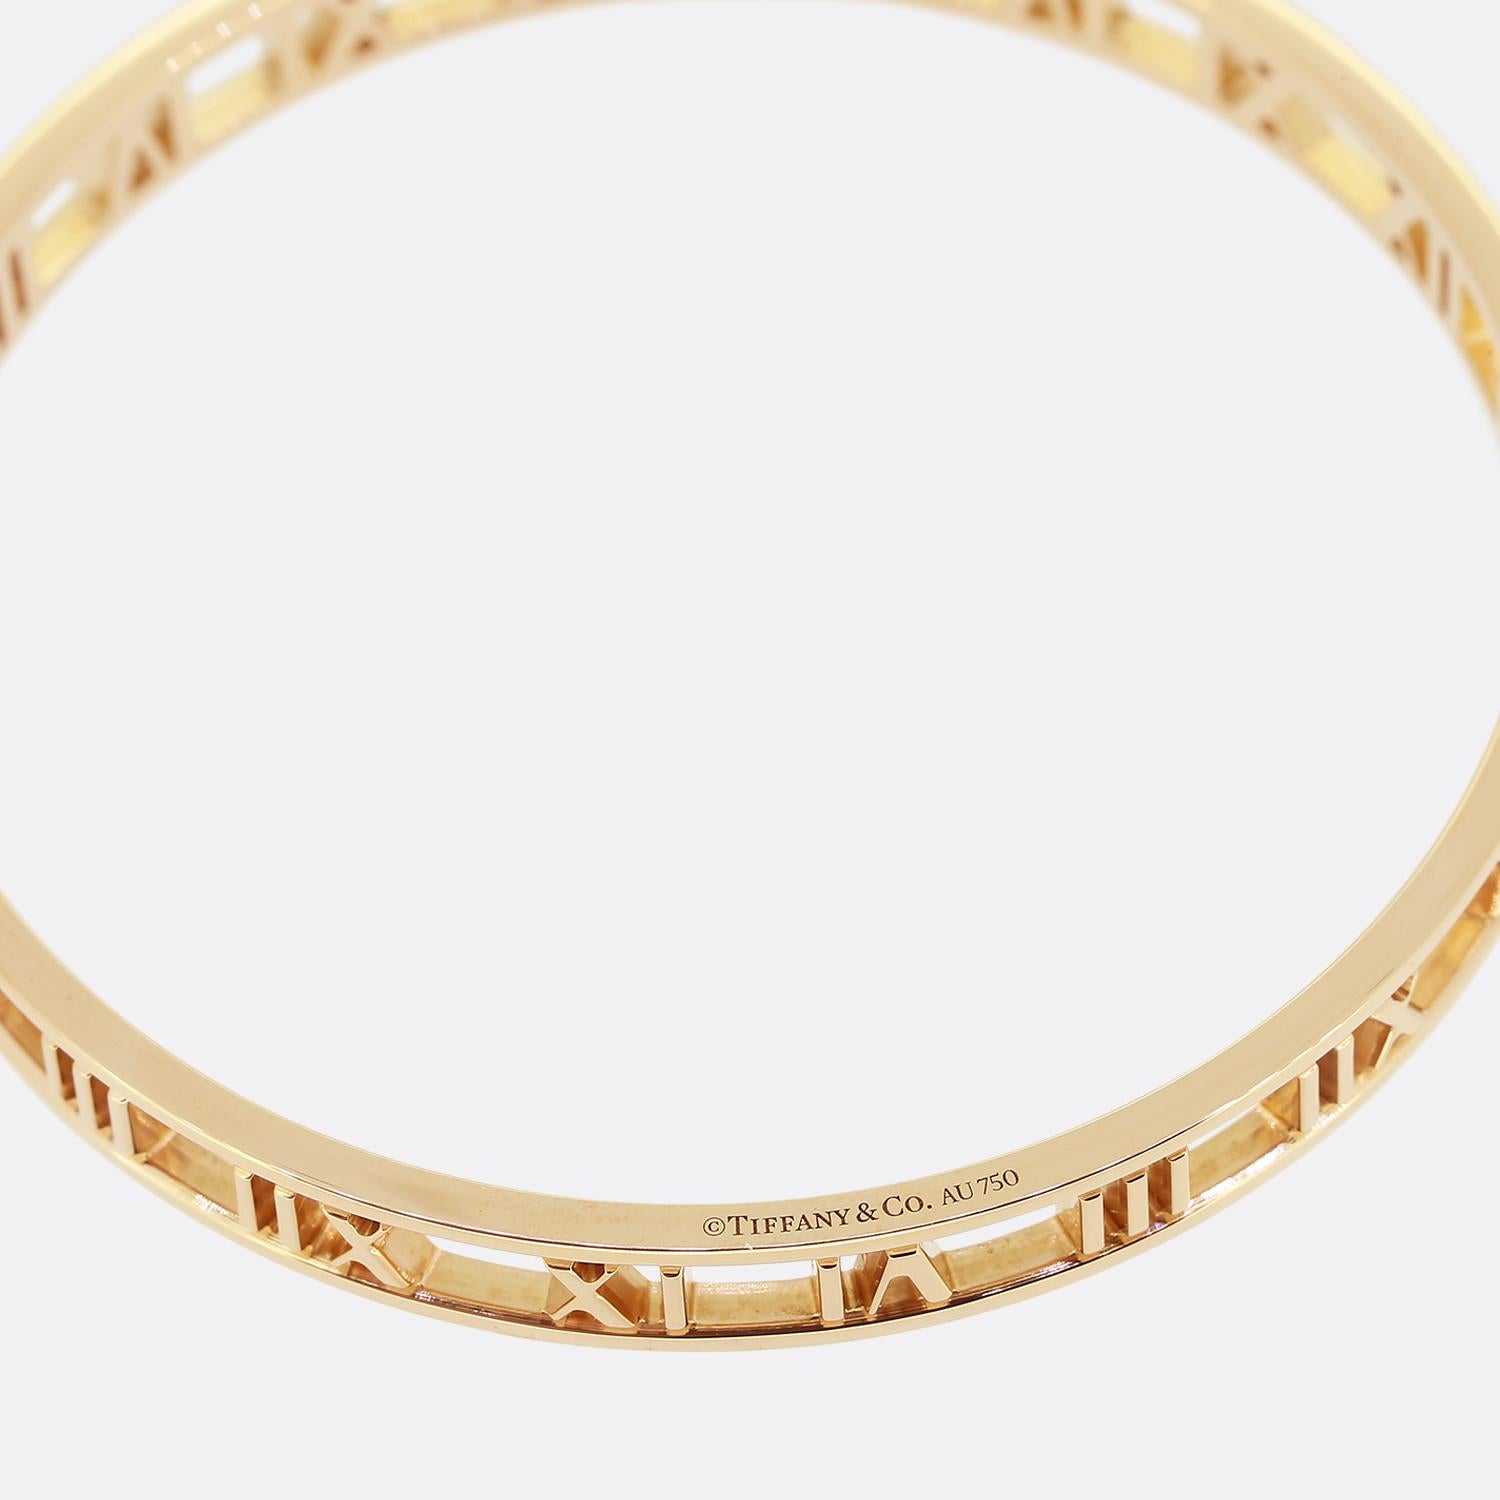 Il s'agit d'un bracelet en or rose 18ct du créateur de bijoux de luxe Tiffany & Co. Ce bracelet, qui fait partie de la Collection S/One, est orné du motif emblématique des chiffres romains. Il s'agit d'un modèle à enfiler, veuillez donc tenir compte